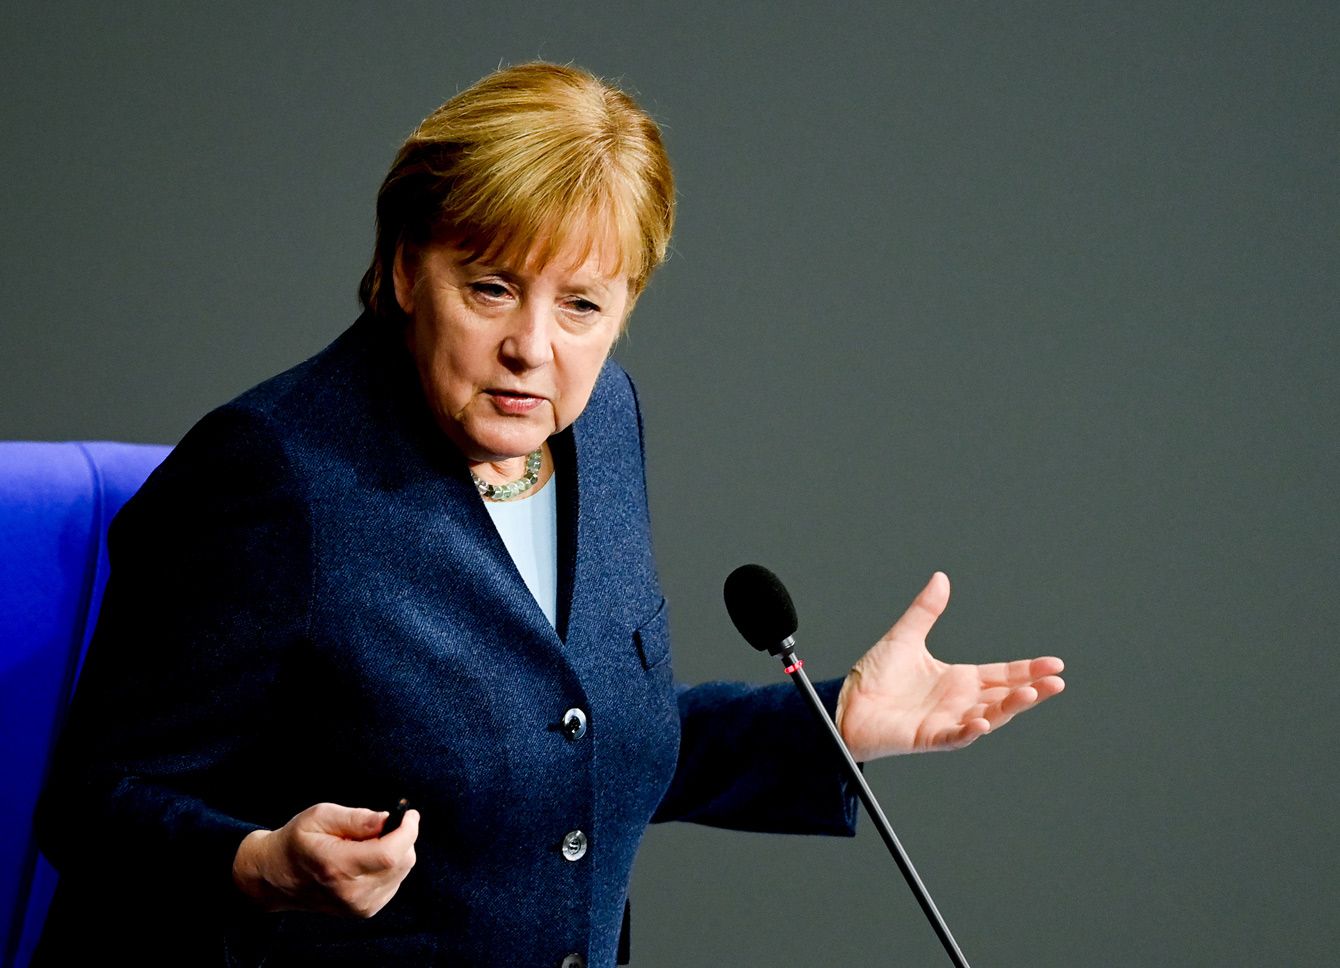 ｢メルケル後はどうなるか｣ドイツ与党の党首選に世界が注目するワケ